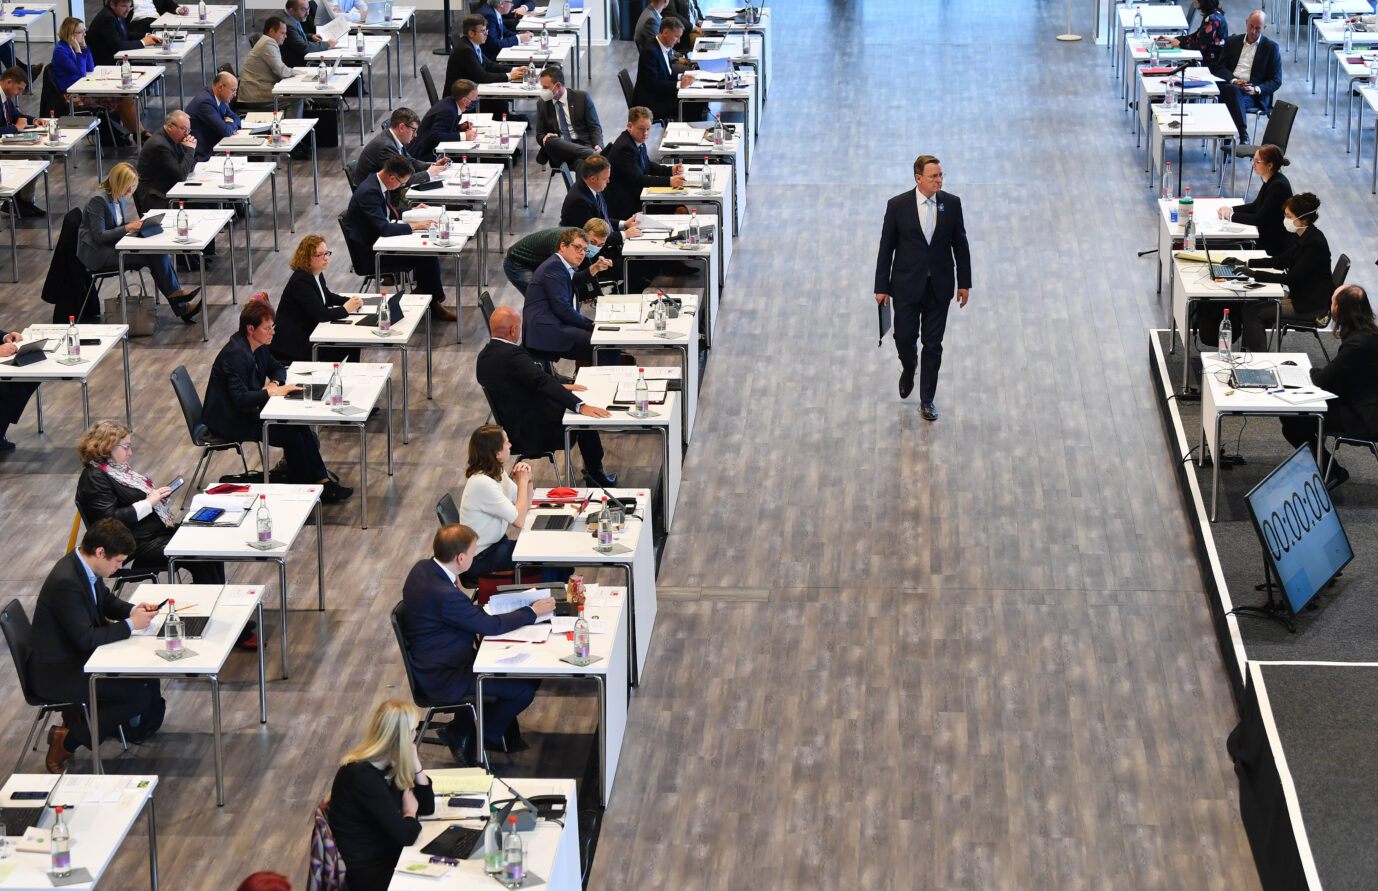 Thüringens Ministerpräsident Bodo Ramelow (Linkspartei) während einer Landtagssitzung in einem externen Saal